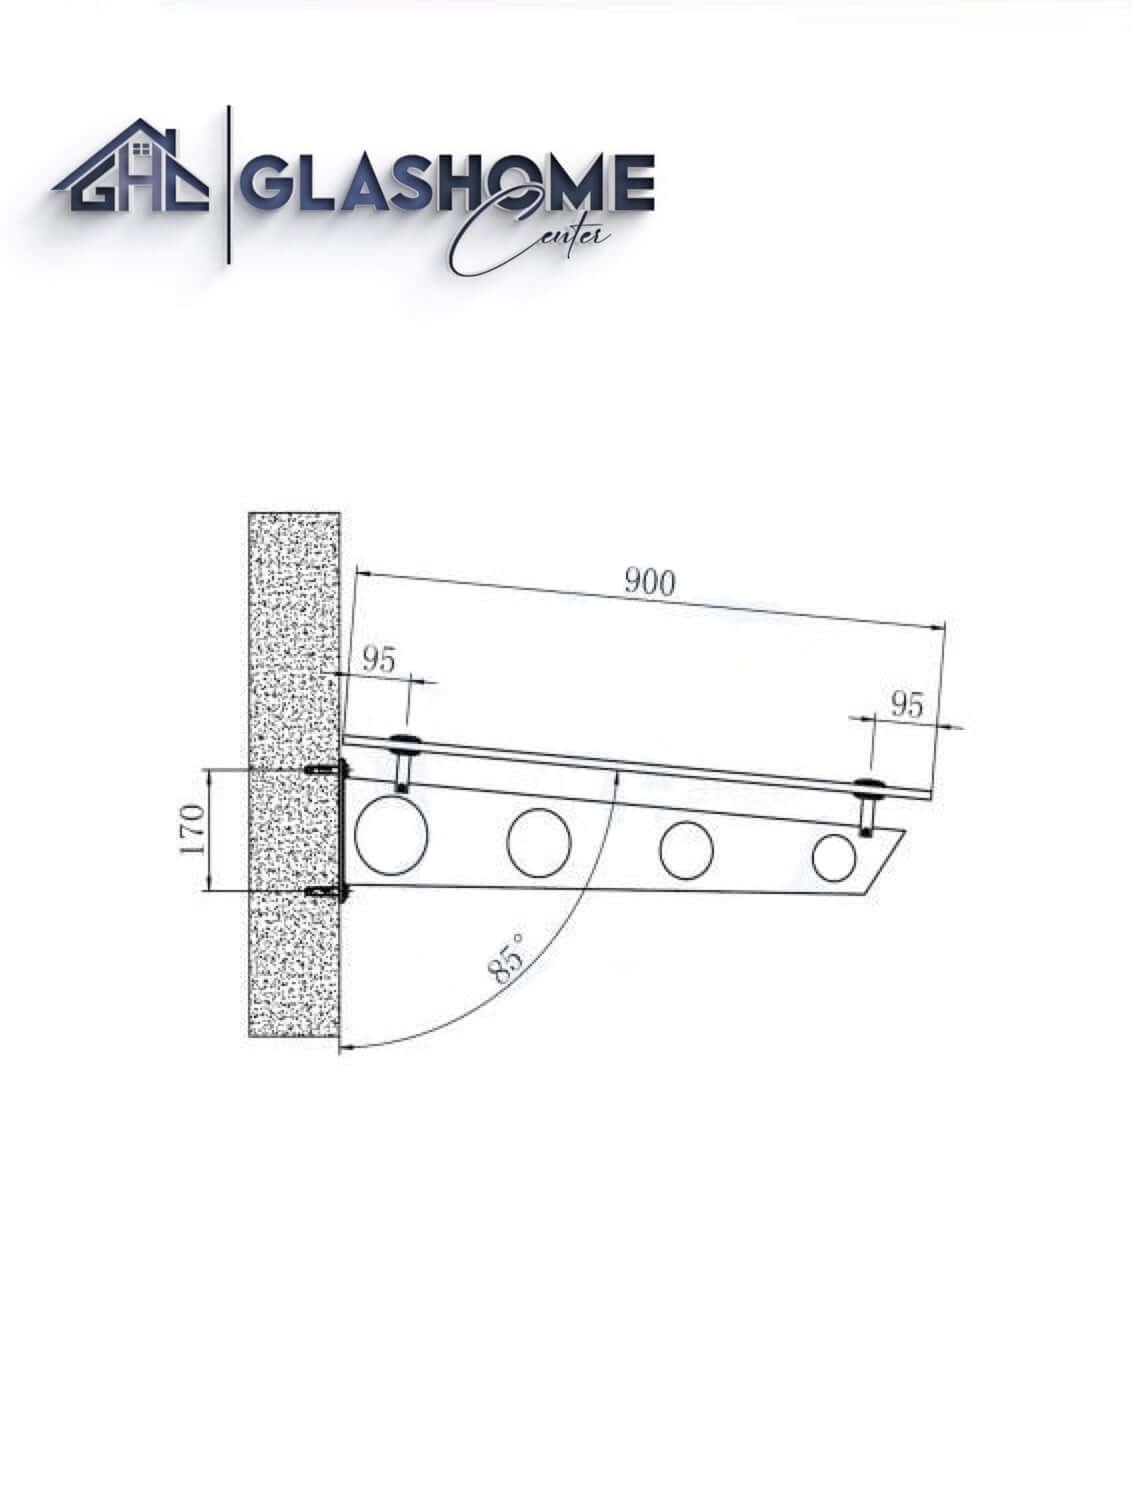 GlasHomeCenter - Glasvordach - Milchglas - 200x90cm - 13.1mm VSG - inkl. 3 schwarze Edelstahlhalterungen Variante "Stockholm"